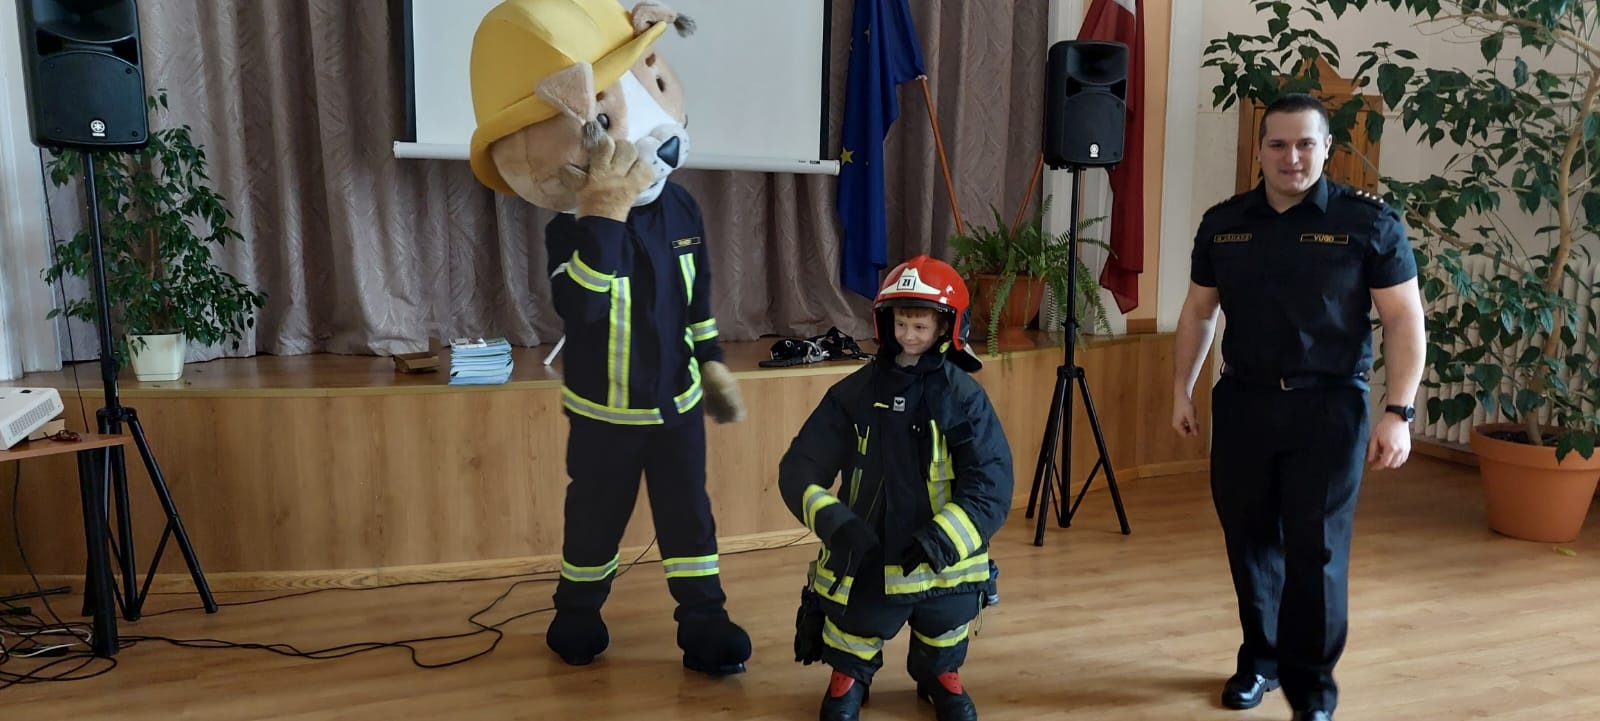 Zālē pie skatuves stāv bērns, kas ietērpts ugunsdzēsēja glābēja tērpā. Bērnam kreisajā malā stāv ugunsdzēsējs glābējs Guntiņš un skatās uz bērnu. Bērnam labajā pusē stāv VUGD nodarbinātais un skatās fotogrāfa virzienā